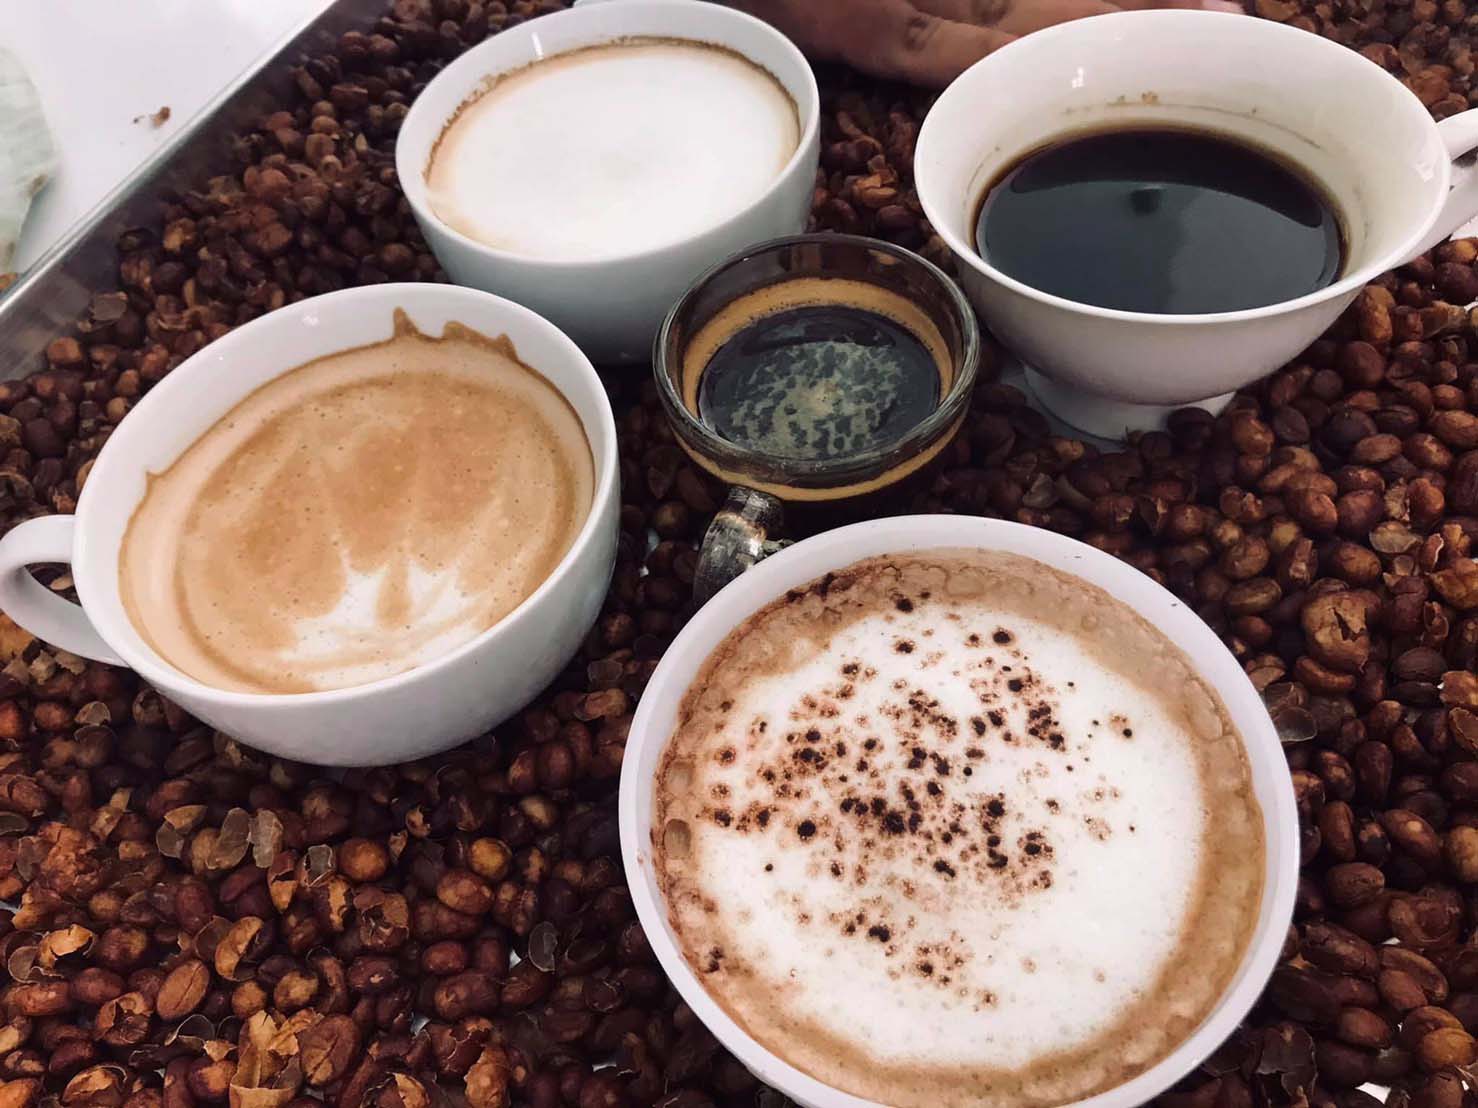 คณะเกษตร มรภ.สงขลา เอาใจคอกาแฟ จัดอบรมหลักสูตรระยะสั้น “สานฝันธุรกิจ Coffee”